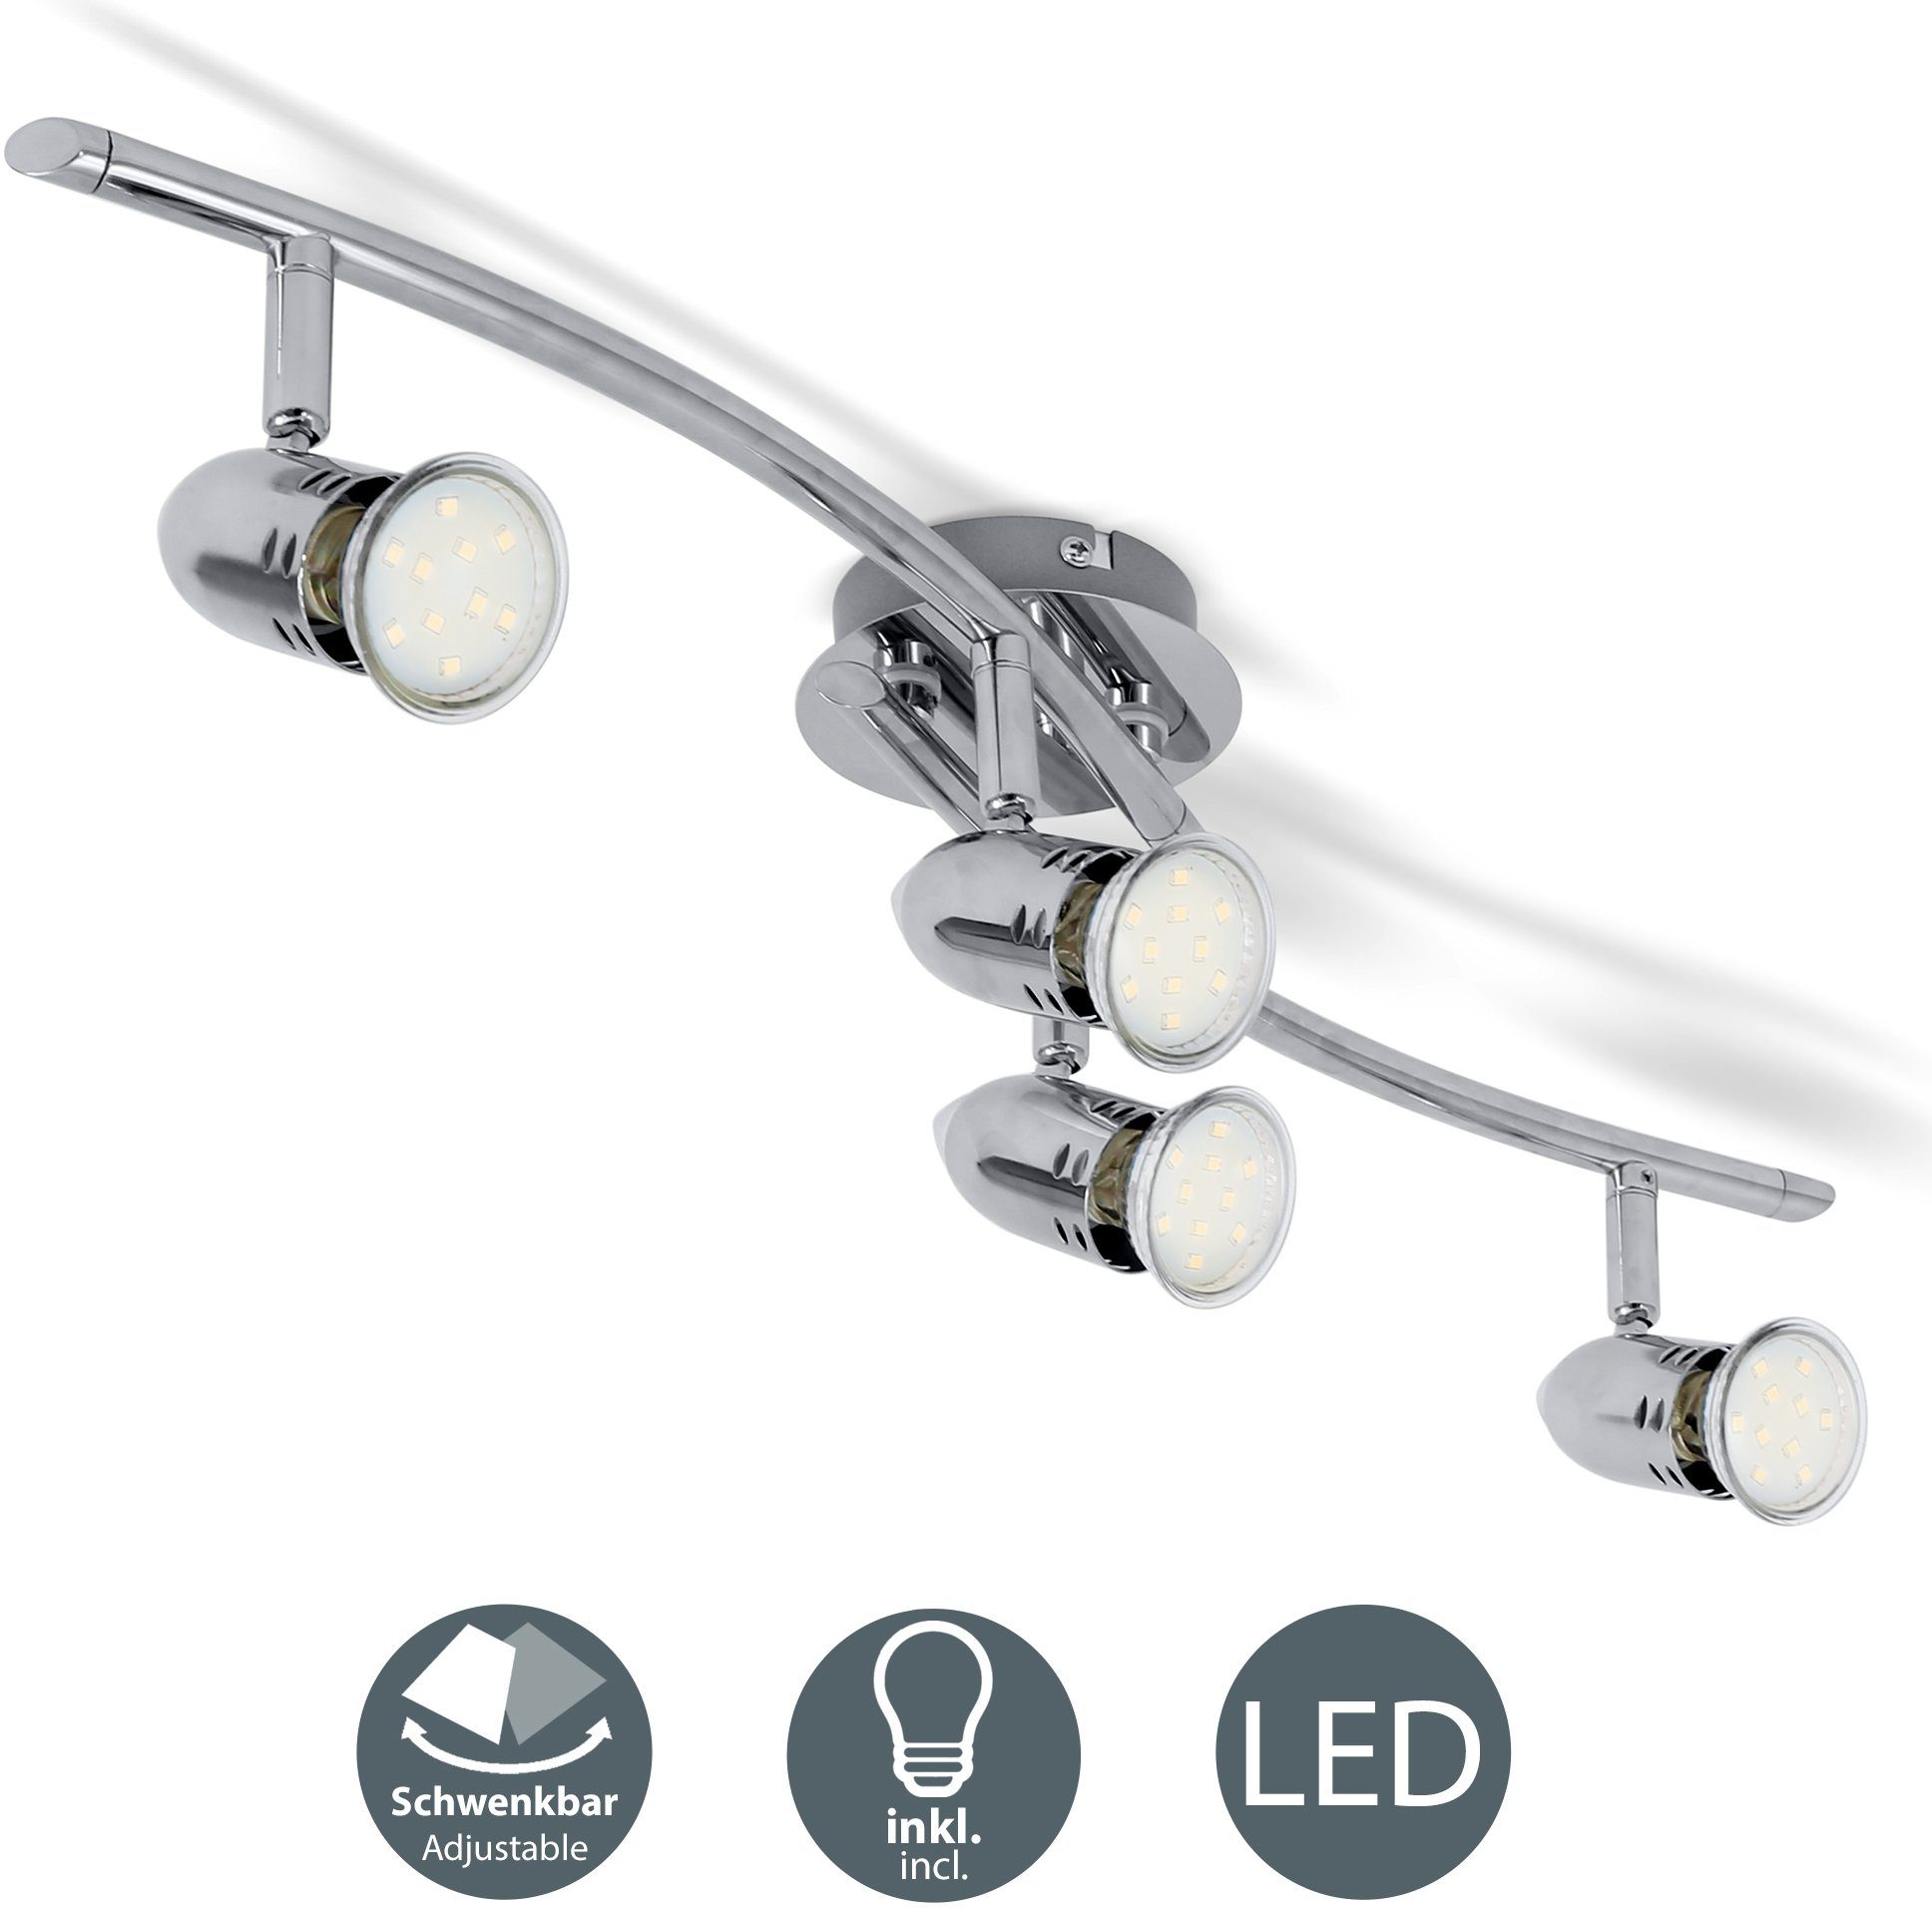 LED chrom, B.K.Licht 3W Strahler, Deckenleuchte, Warmweiß, Deckenlampe, wechselbar, Decken-Spot, 250lm modern, inkl. Leuchtmittel